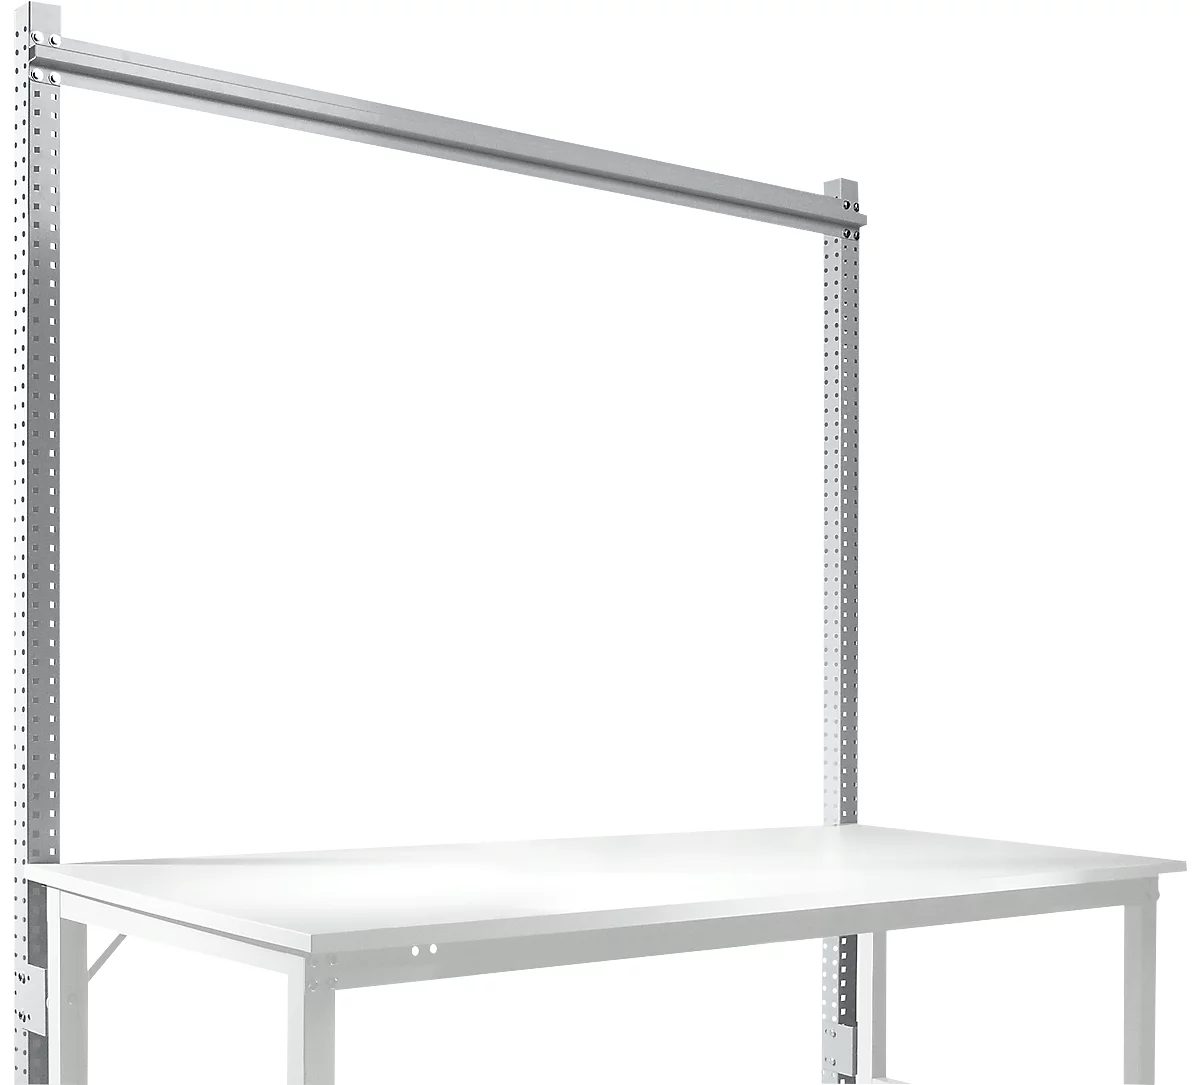 Estructura pórtica adicional, mesa básica STANDARD sistema mesa de trabajo/banco de trabajo UNIVERSAL/PROFI, 1750 mm, aluminio plateado